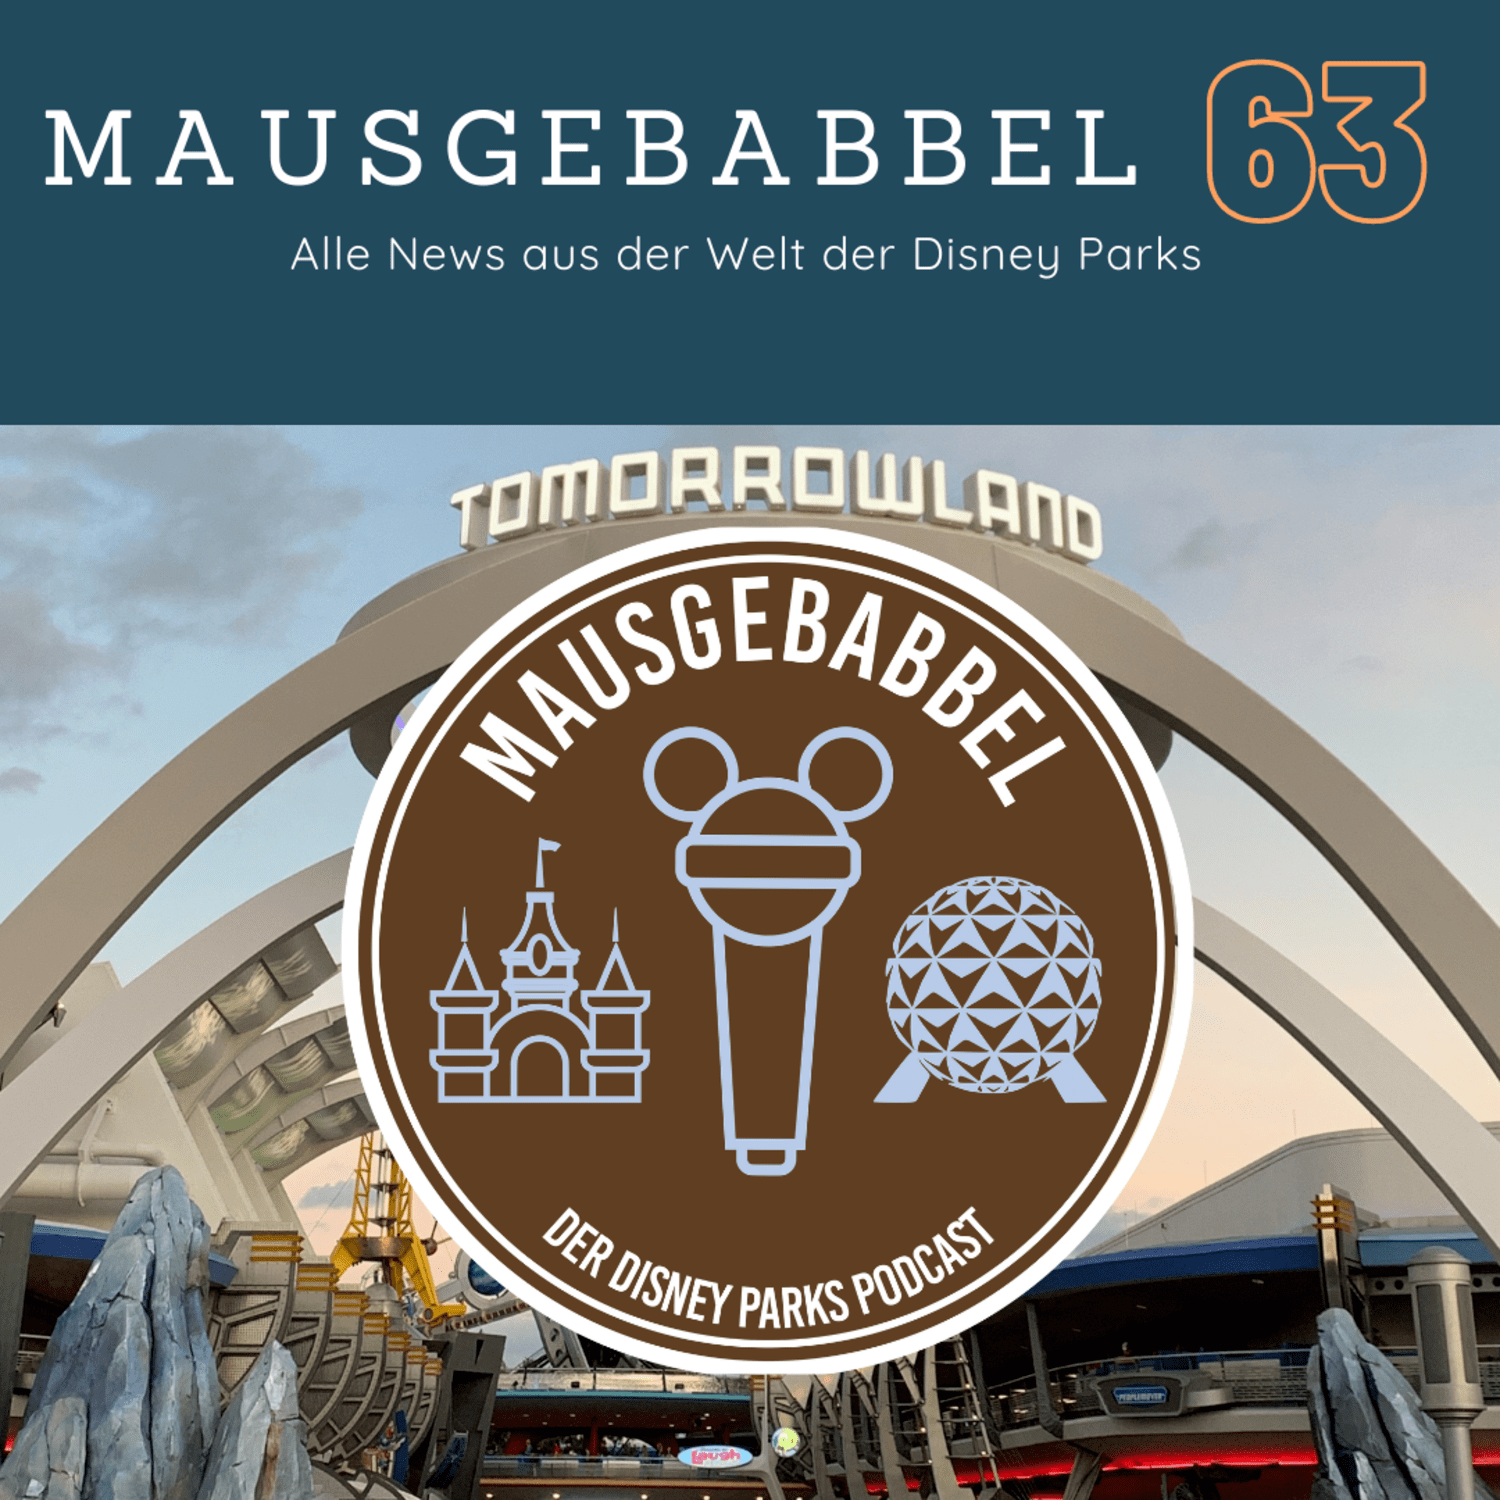 Mausgebabbel 63 - Die spannendsten Neuigkeiten aus Disneyland Paris und Co. 1